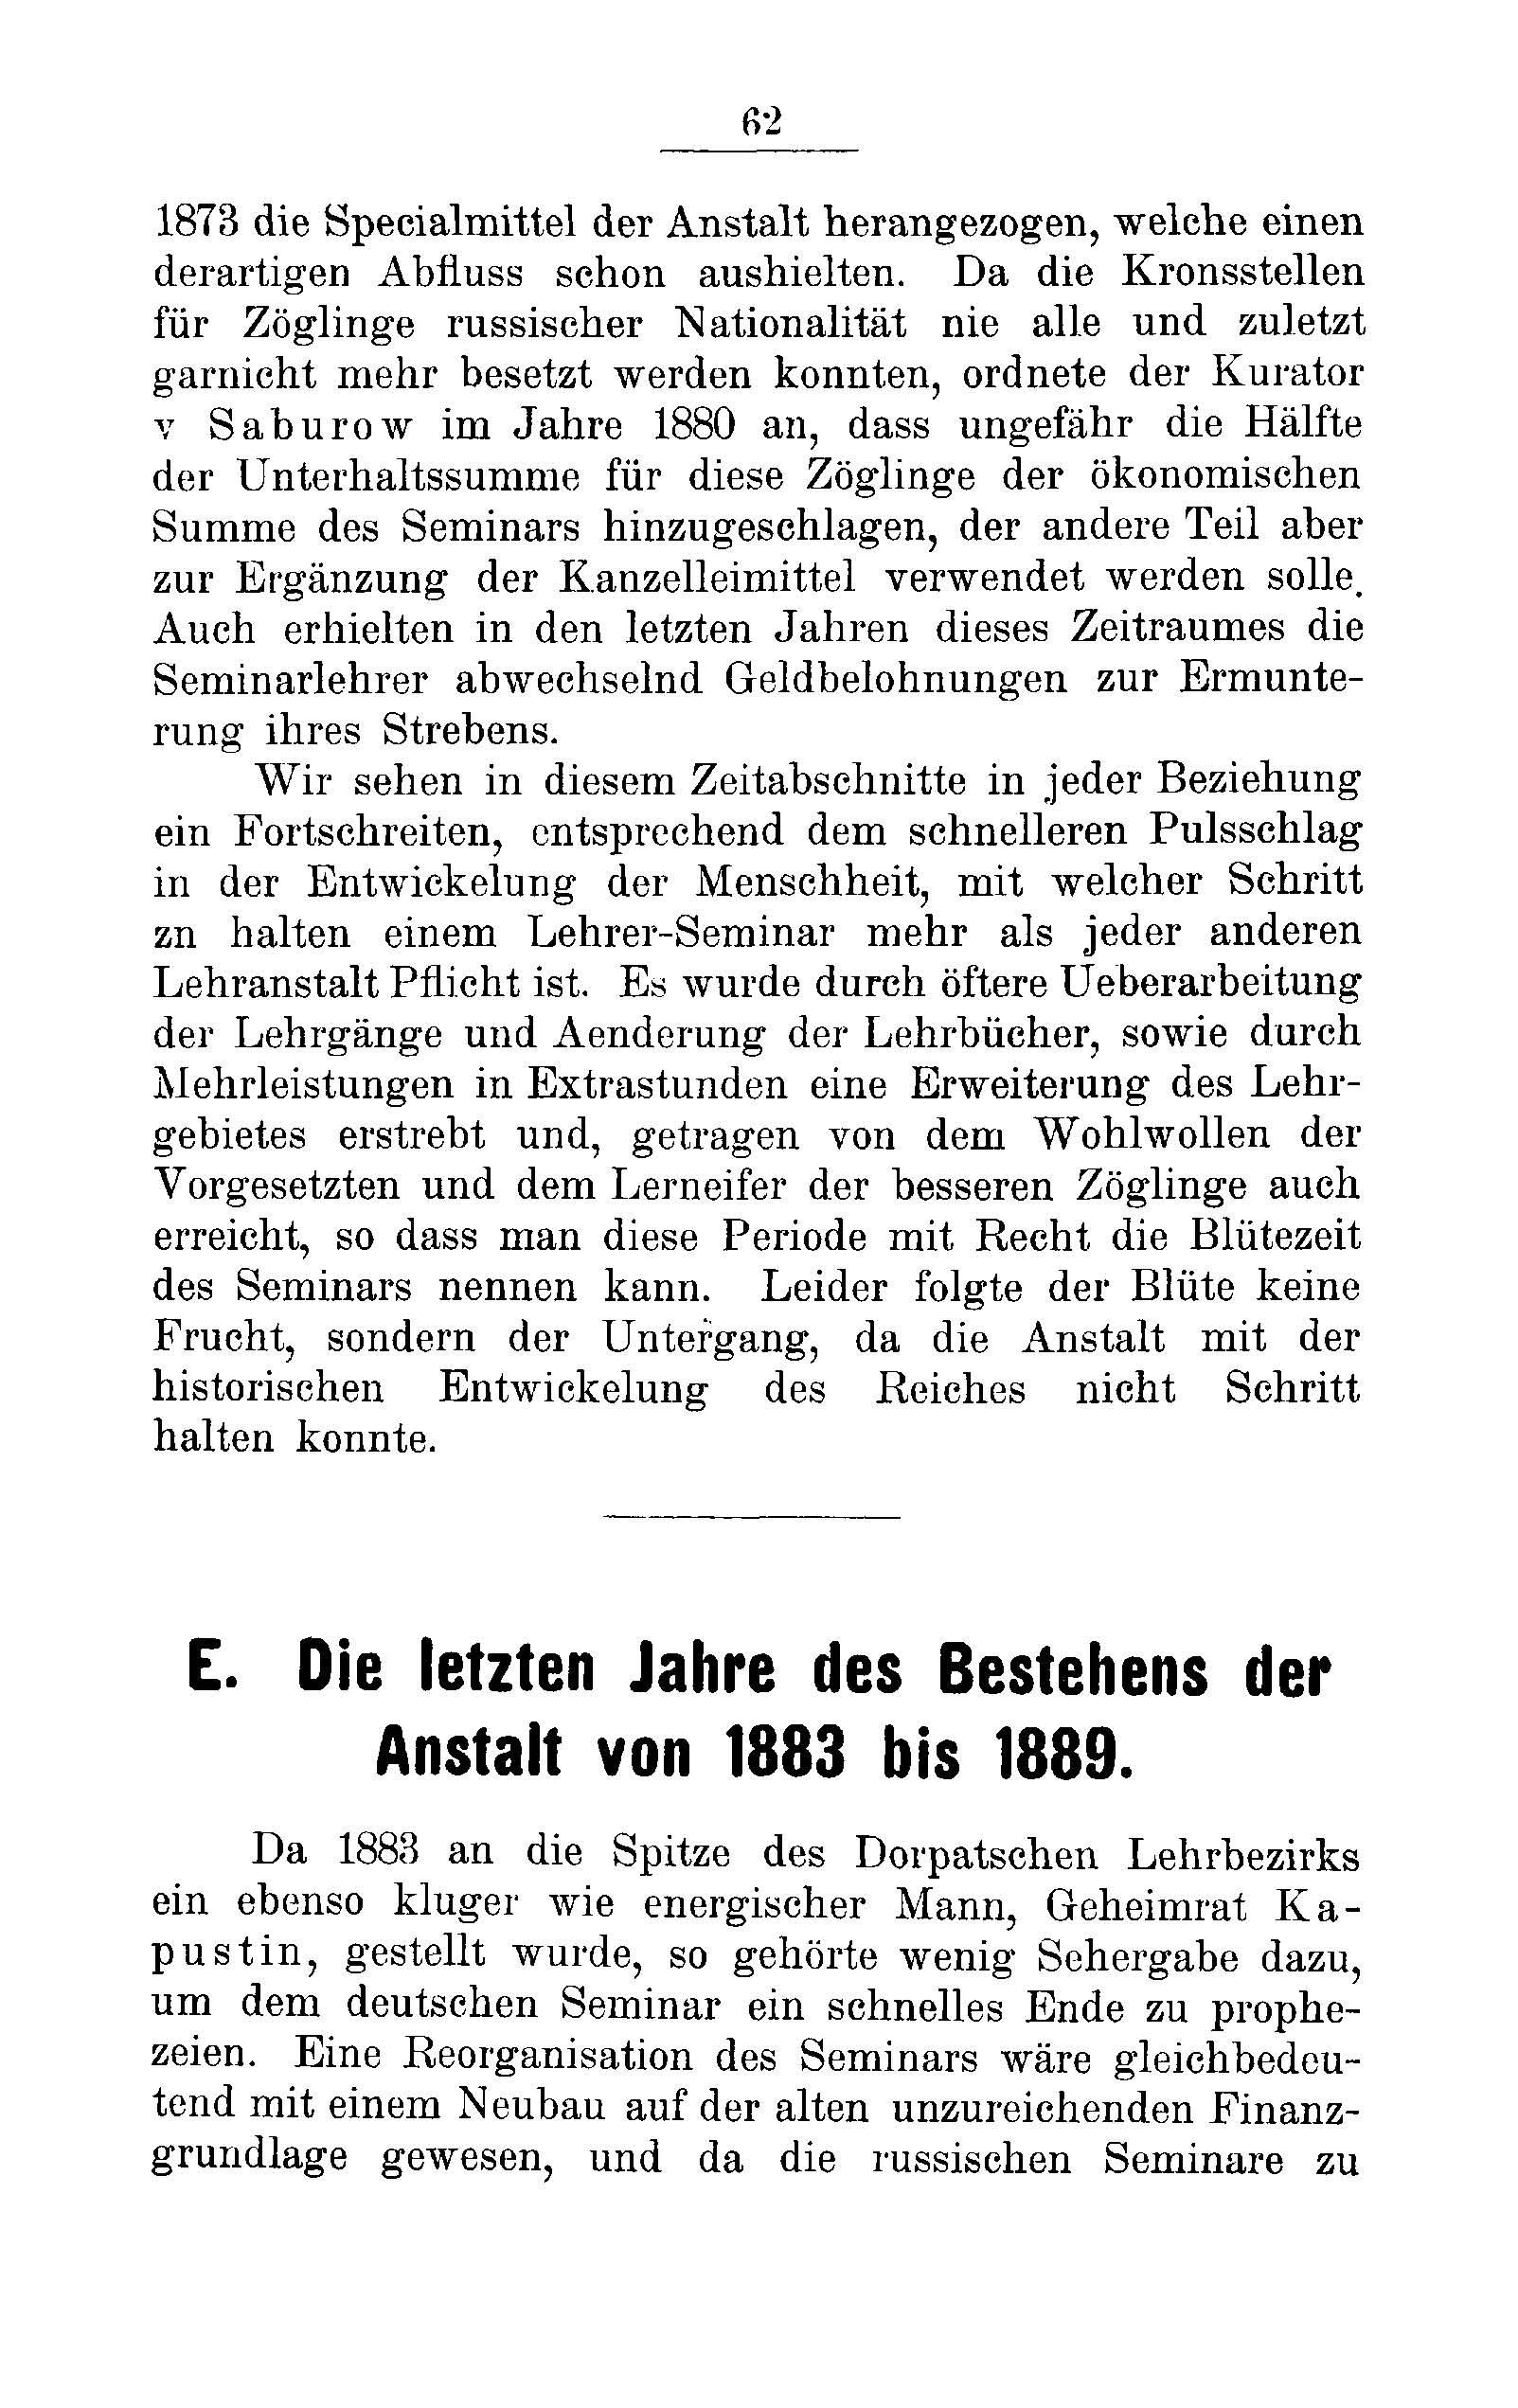 Das Erste Dorpatsche Lehrer-Seminar (1890) | 65. Haupttext